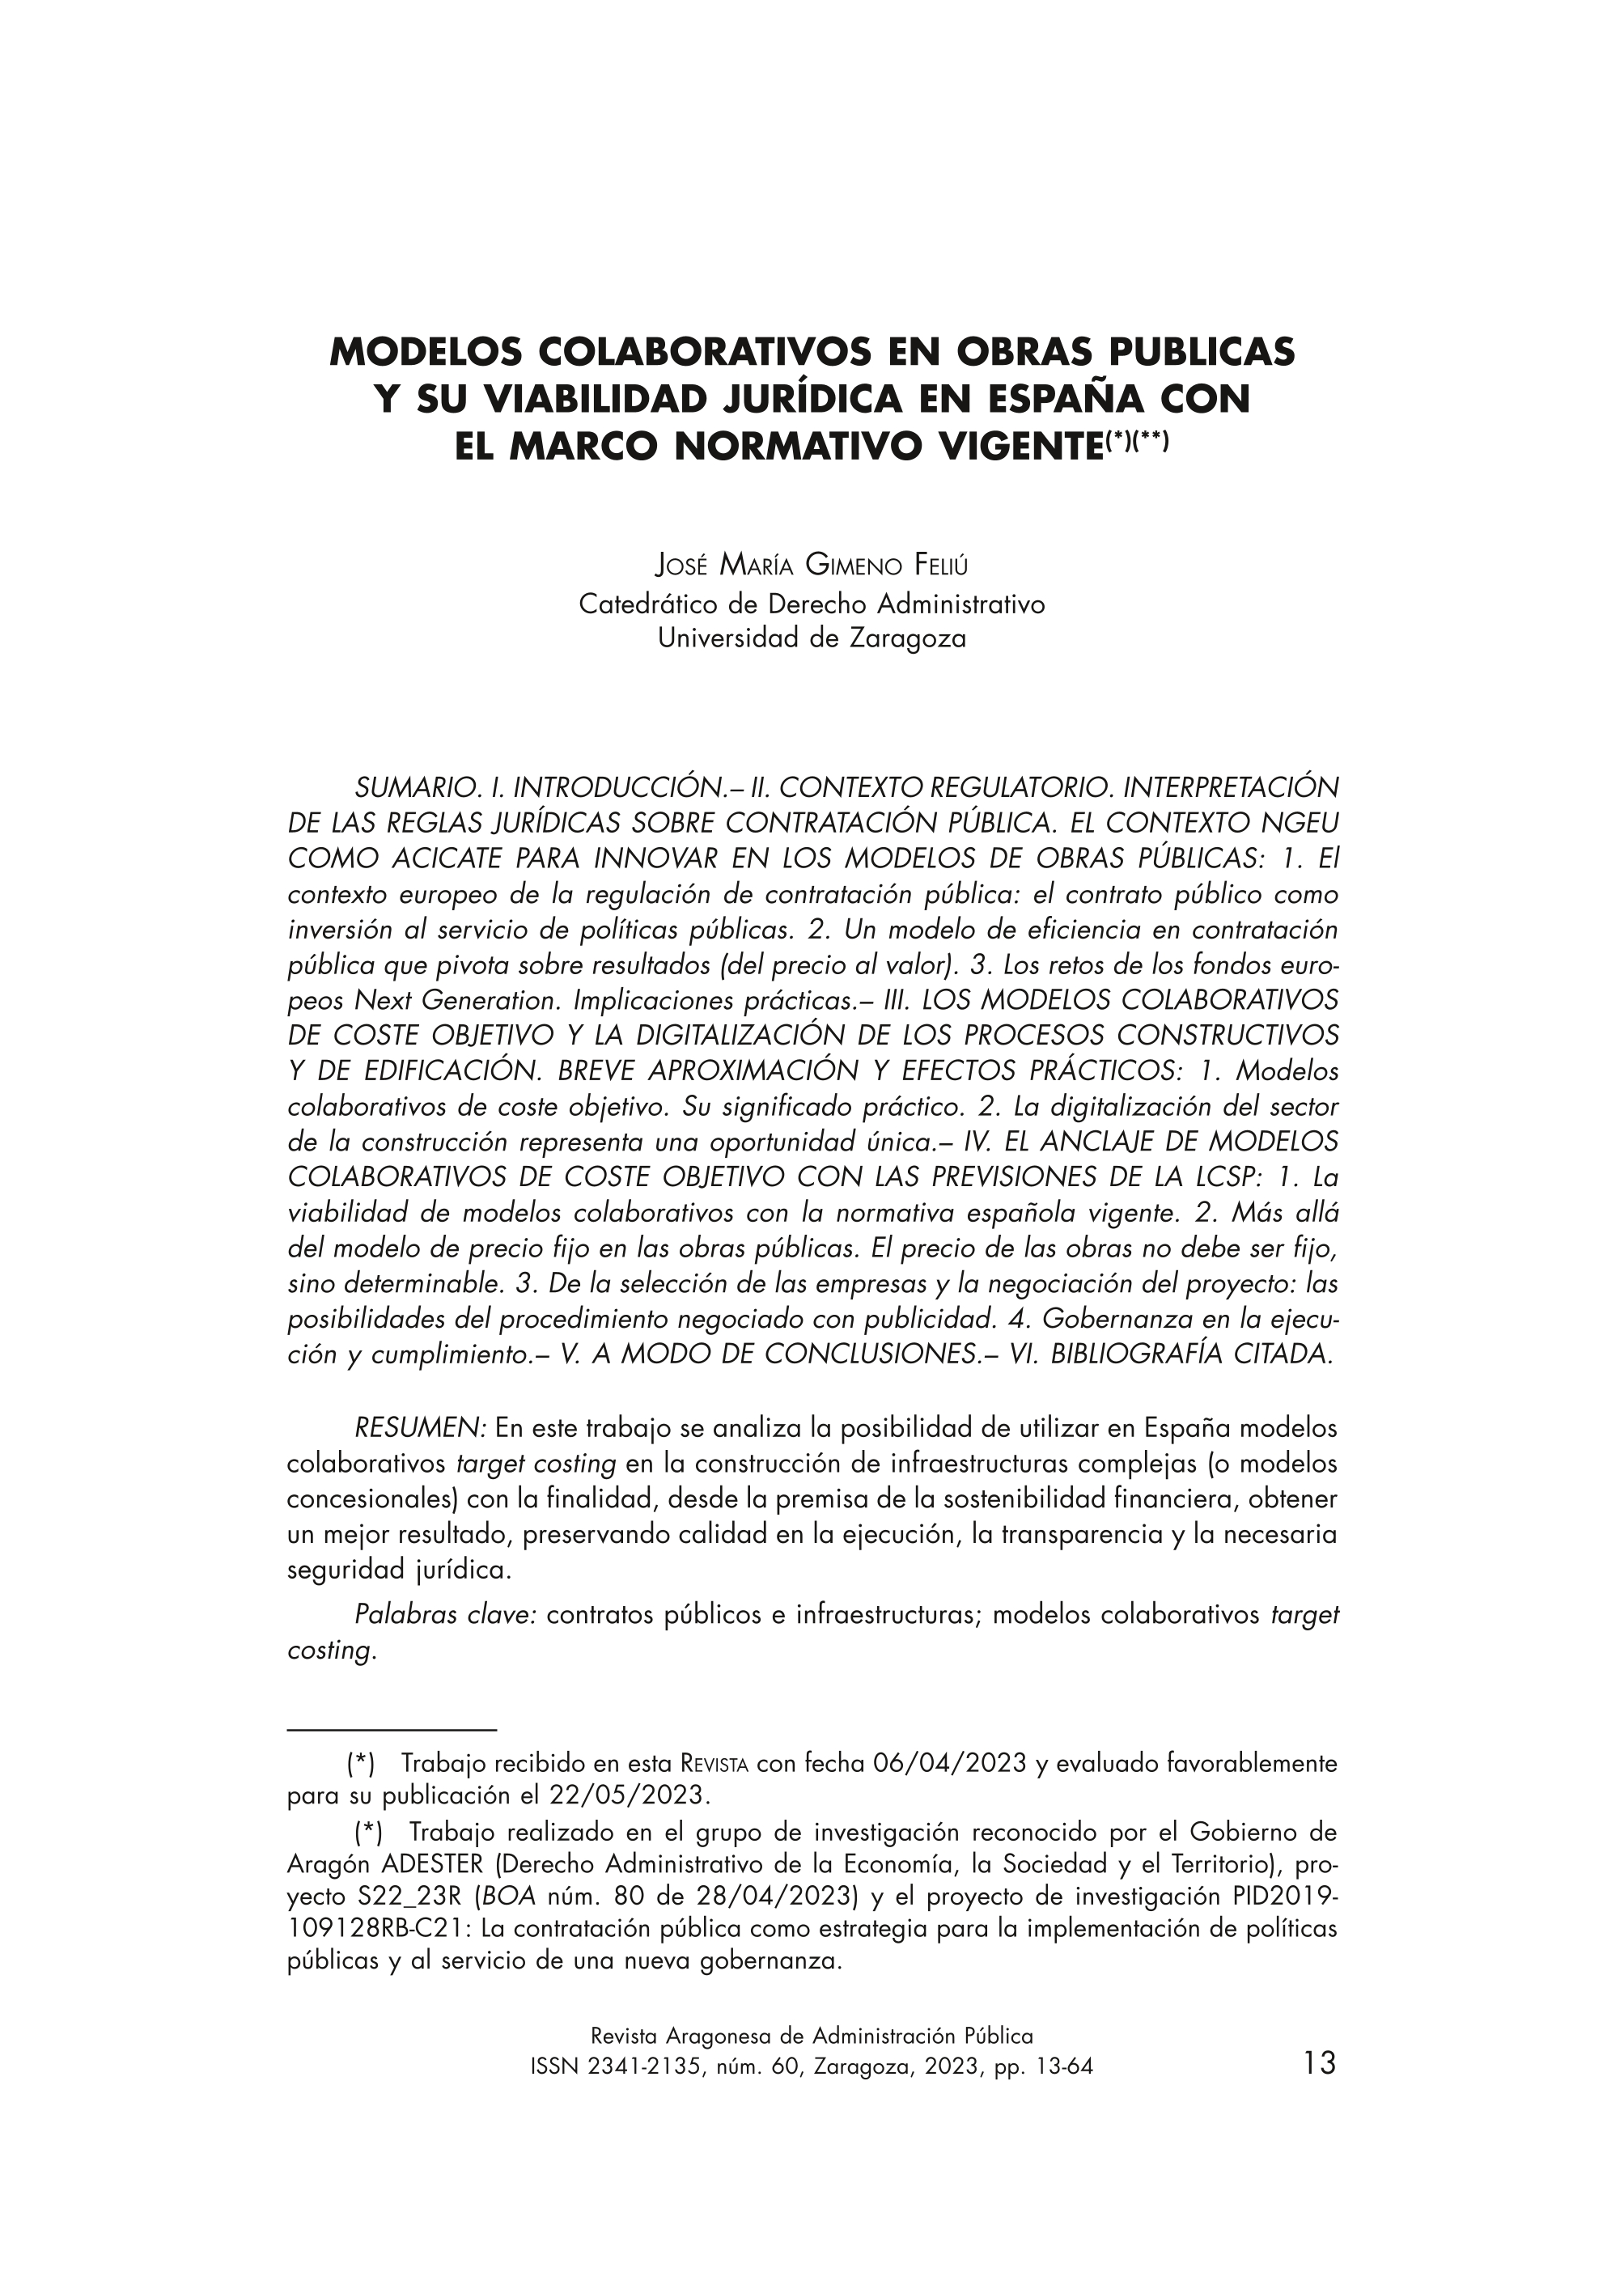 Modelos colaborativos en obras publicas y su viabilidad jurídica en España con el marco normativo vigente